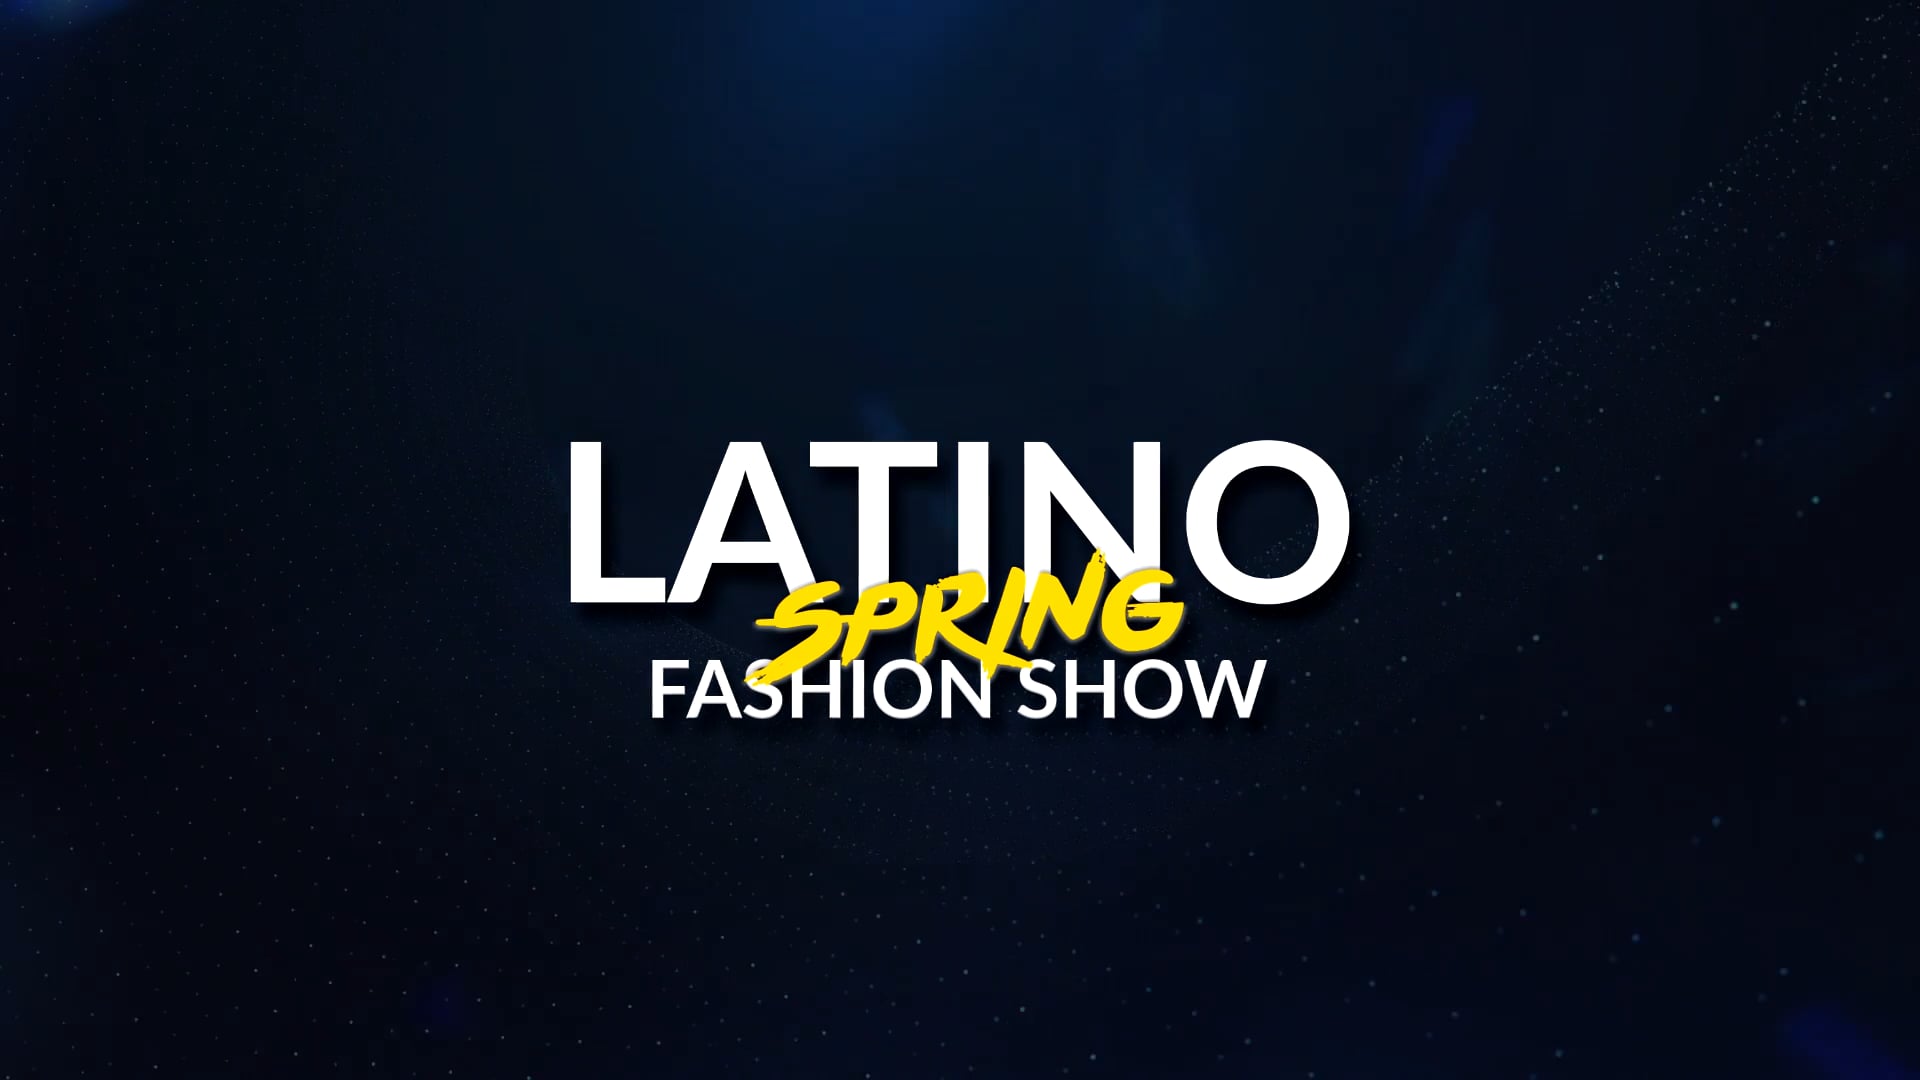 Latino Spring Fashion Show 2019